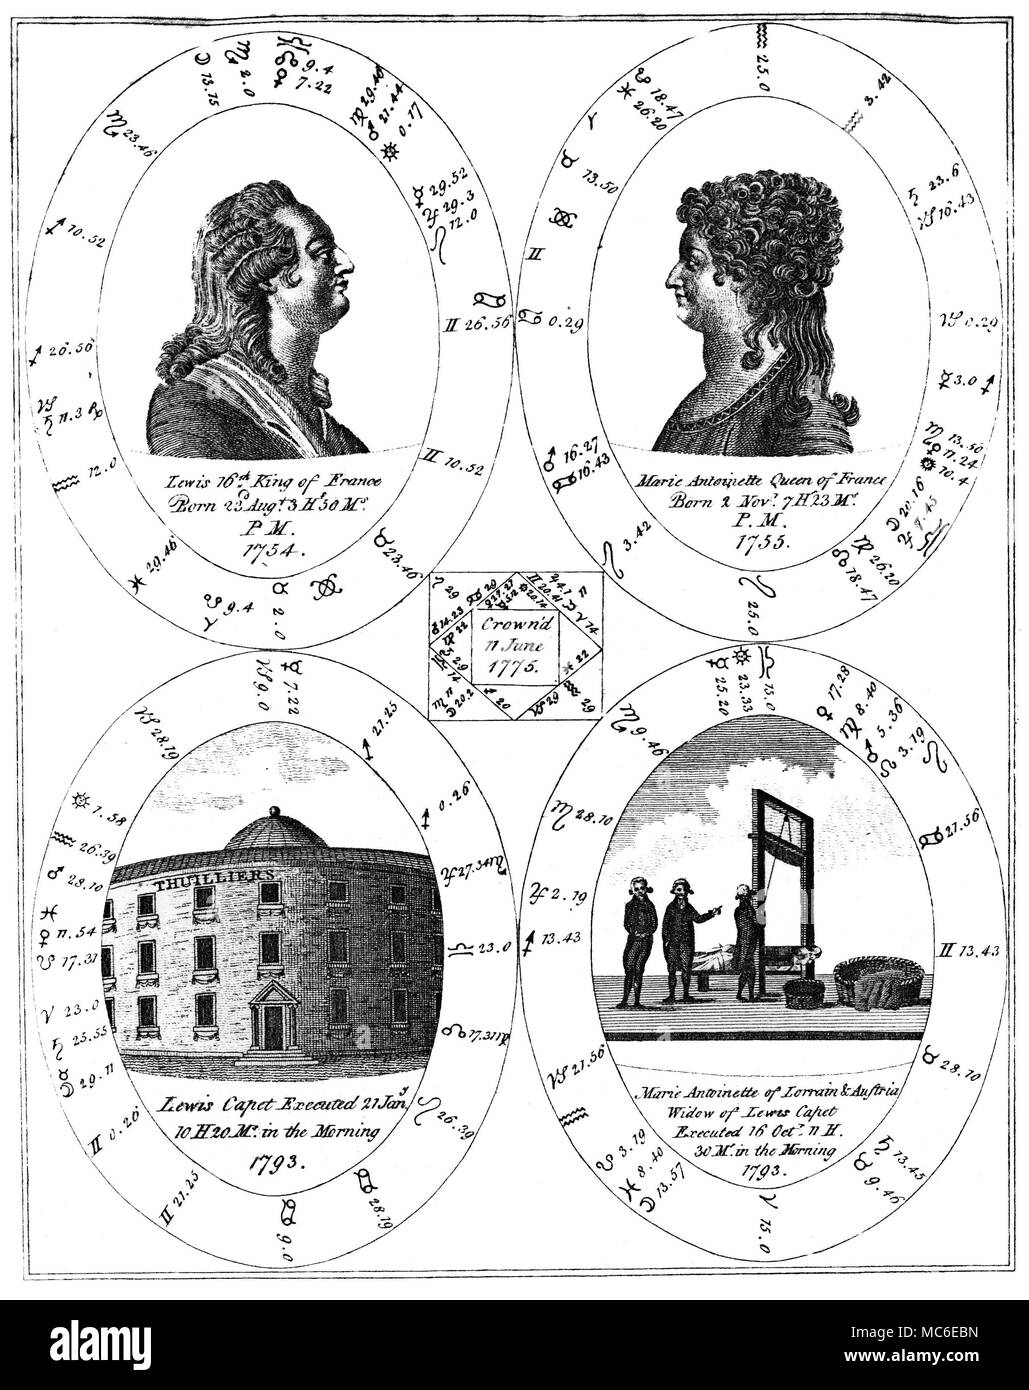 Horoskope - MARIE ANTOINETTE und Ludwig XVI. eine anspruchsvolle Kupferstich, mit Fünf ergänzende Horoskope, von Ebenezer vielleicht, eine Neue und vollständige Abbildung der okkulten Wissenschaften: oder die Kunst der Voraussagen zukünftiger Ereignisse und Unvorhergesehenes... 179... Ludwig XVI. wurde am 23. August, 1754 geboren: Wie die Grafik unten zeigt, wurde er am 21. Januar 1793 ausgeführt. Seine Frau, Marie Antoinette, wurde am 2. November 1755 geboren, und (wie sich aus der Tabelle unten, mit dem grausigen Detail der Guillotine), wurde sie am 16. Oktober 1793 executted. Die kleinen mittleren quadratischen Horoskop ist für die Zeit Stockfoto